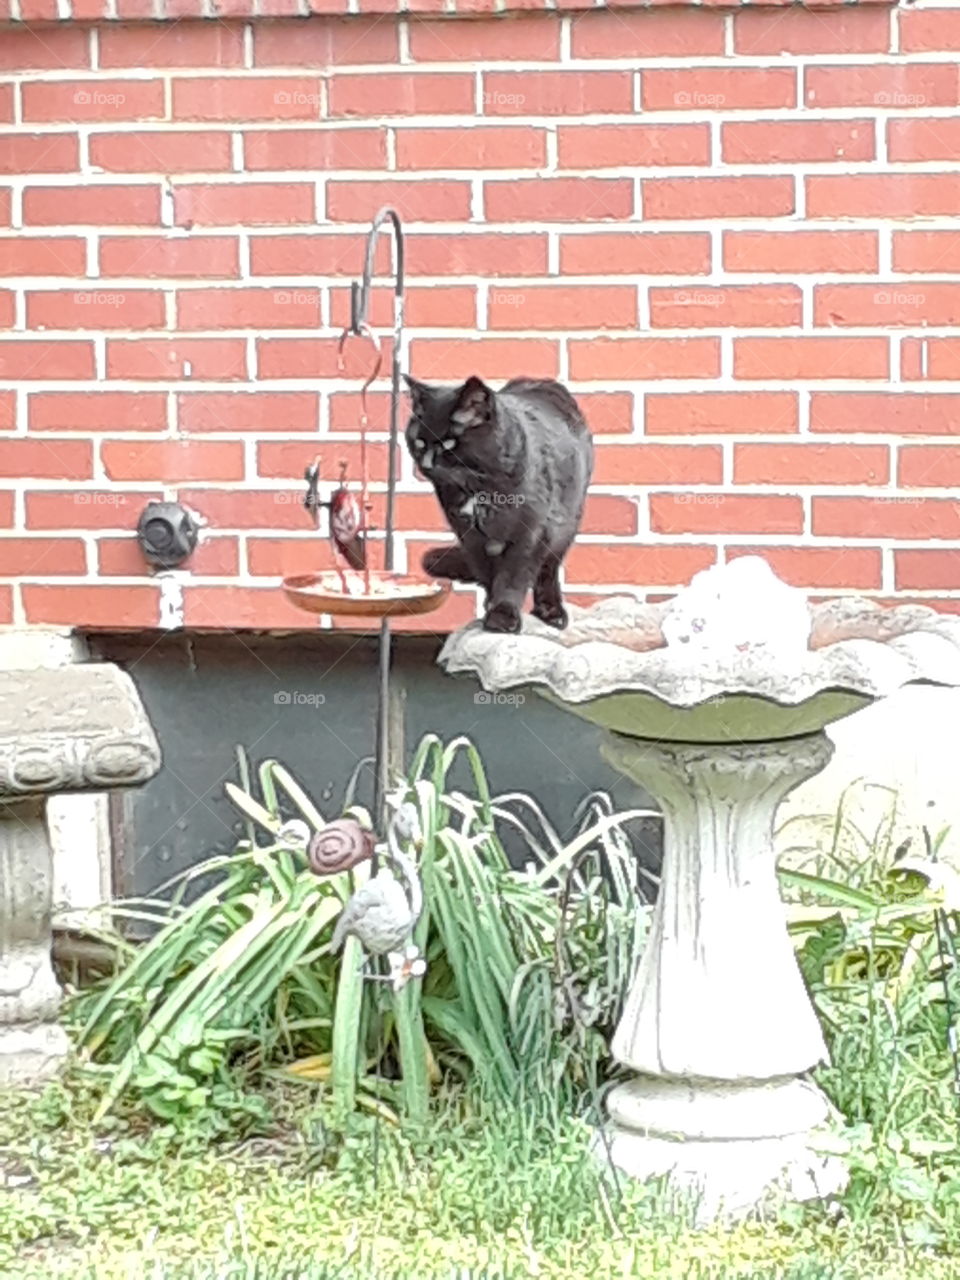 Black Cat in a bird bath with a brick wall